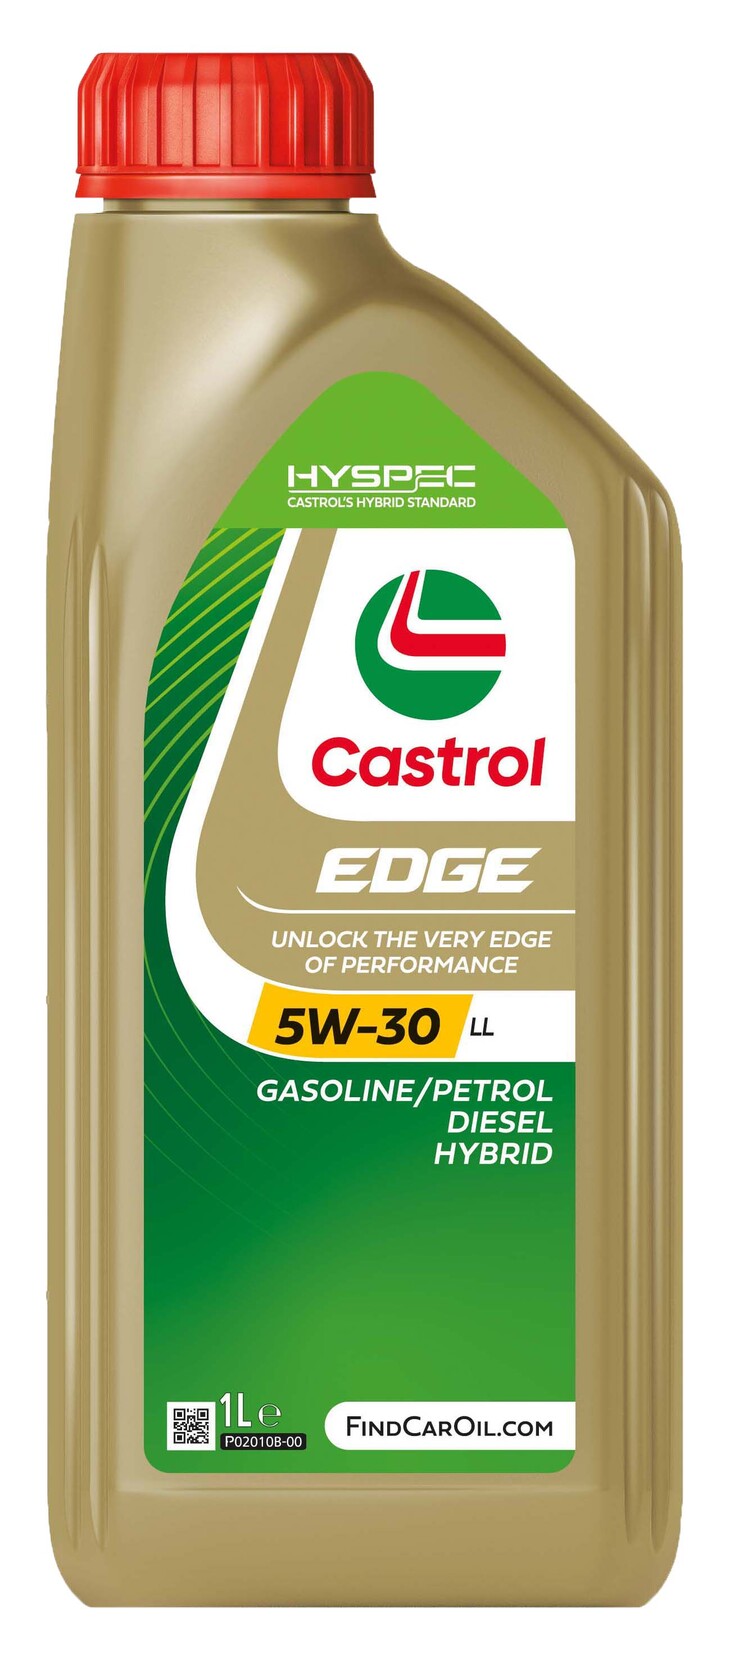 Castrol Edge 5W30 M 5W30 4L - 35,15 € - Neumáticos y Lubricantes